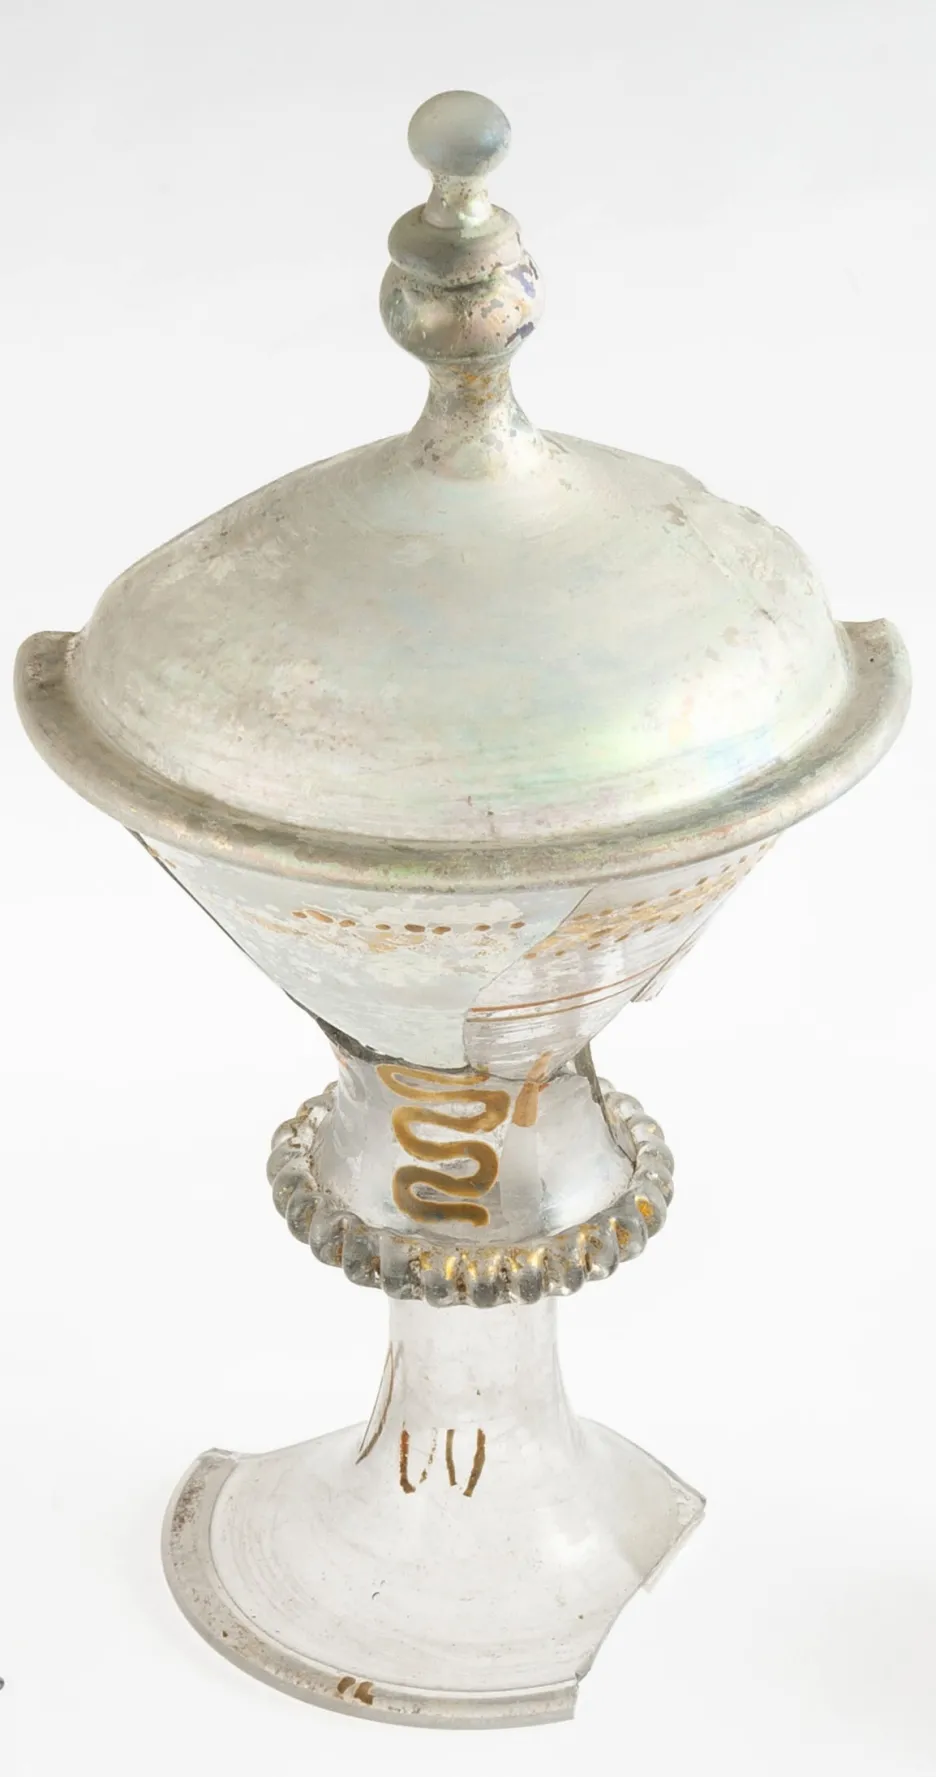 Malovaný a zlacený pohár s víkem z bratislavského hradu – vyšší kategorie luxusního zboží.